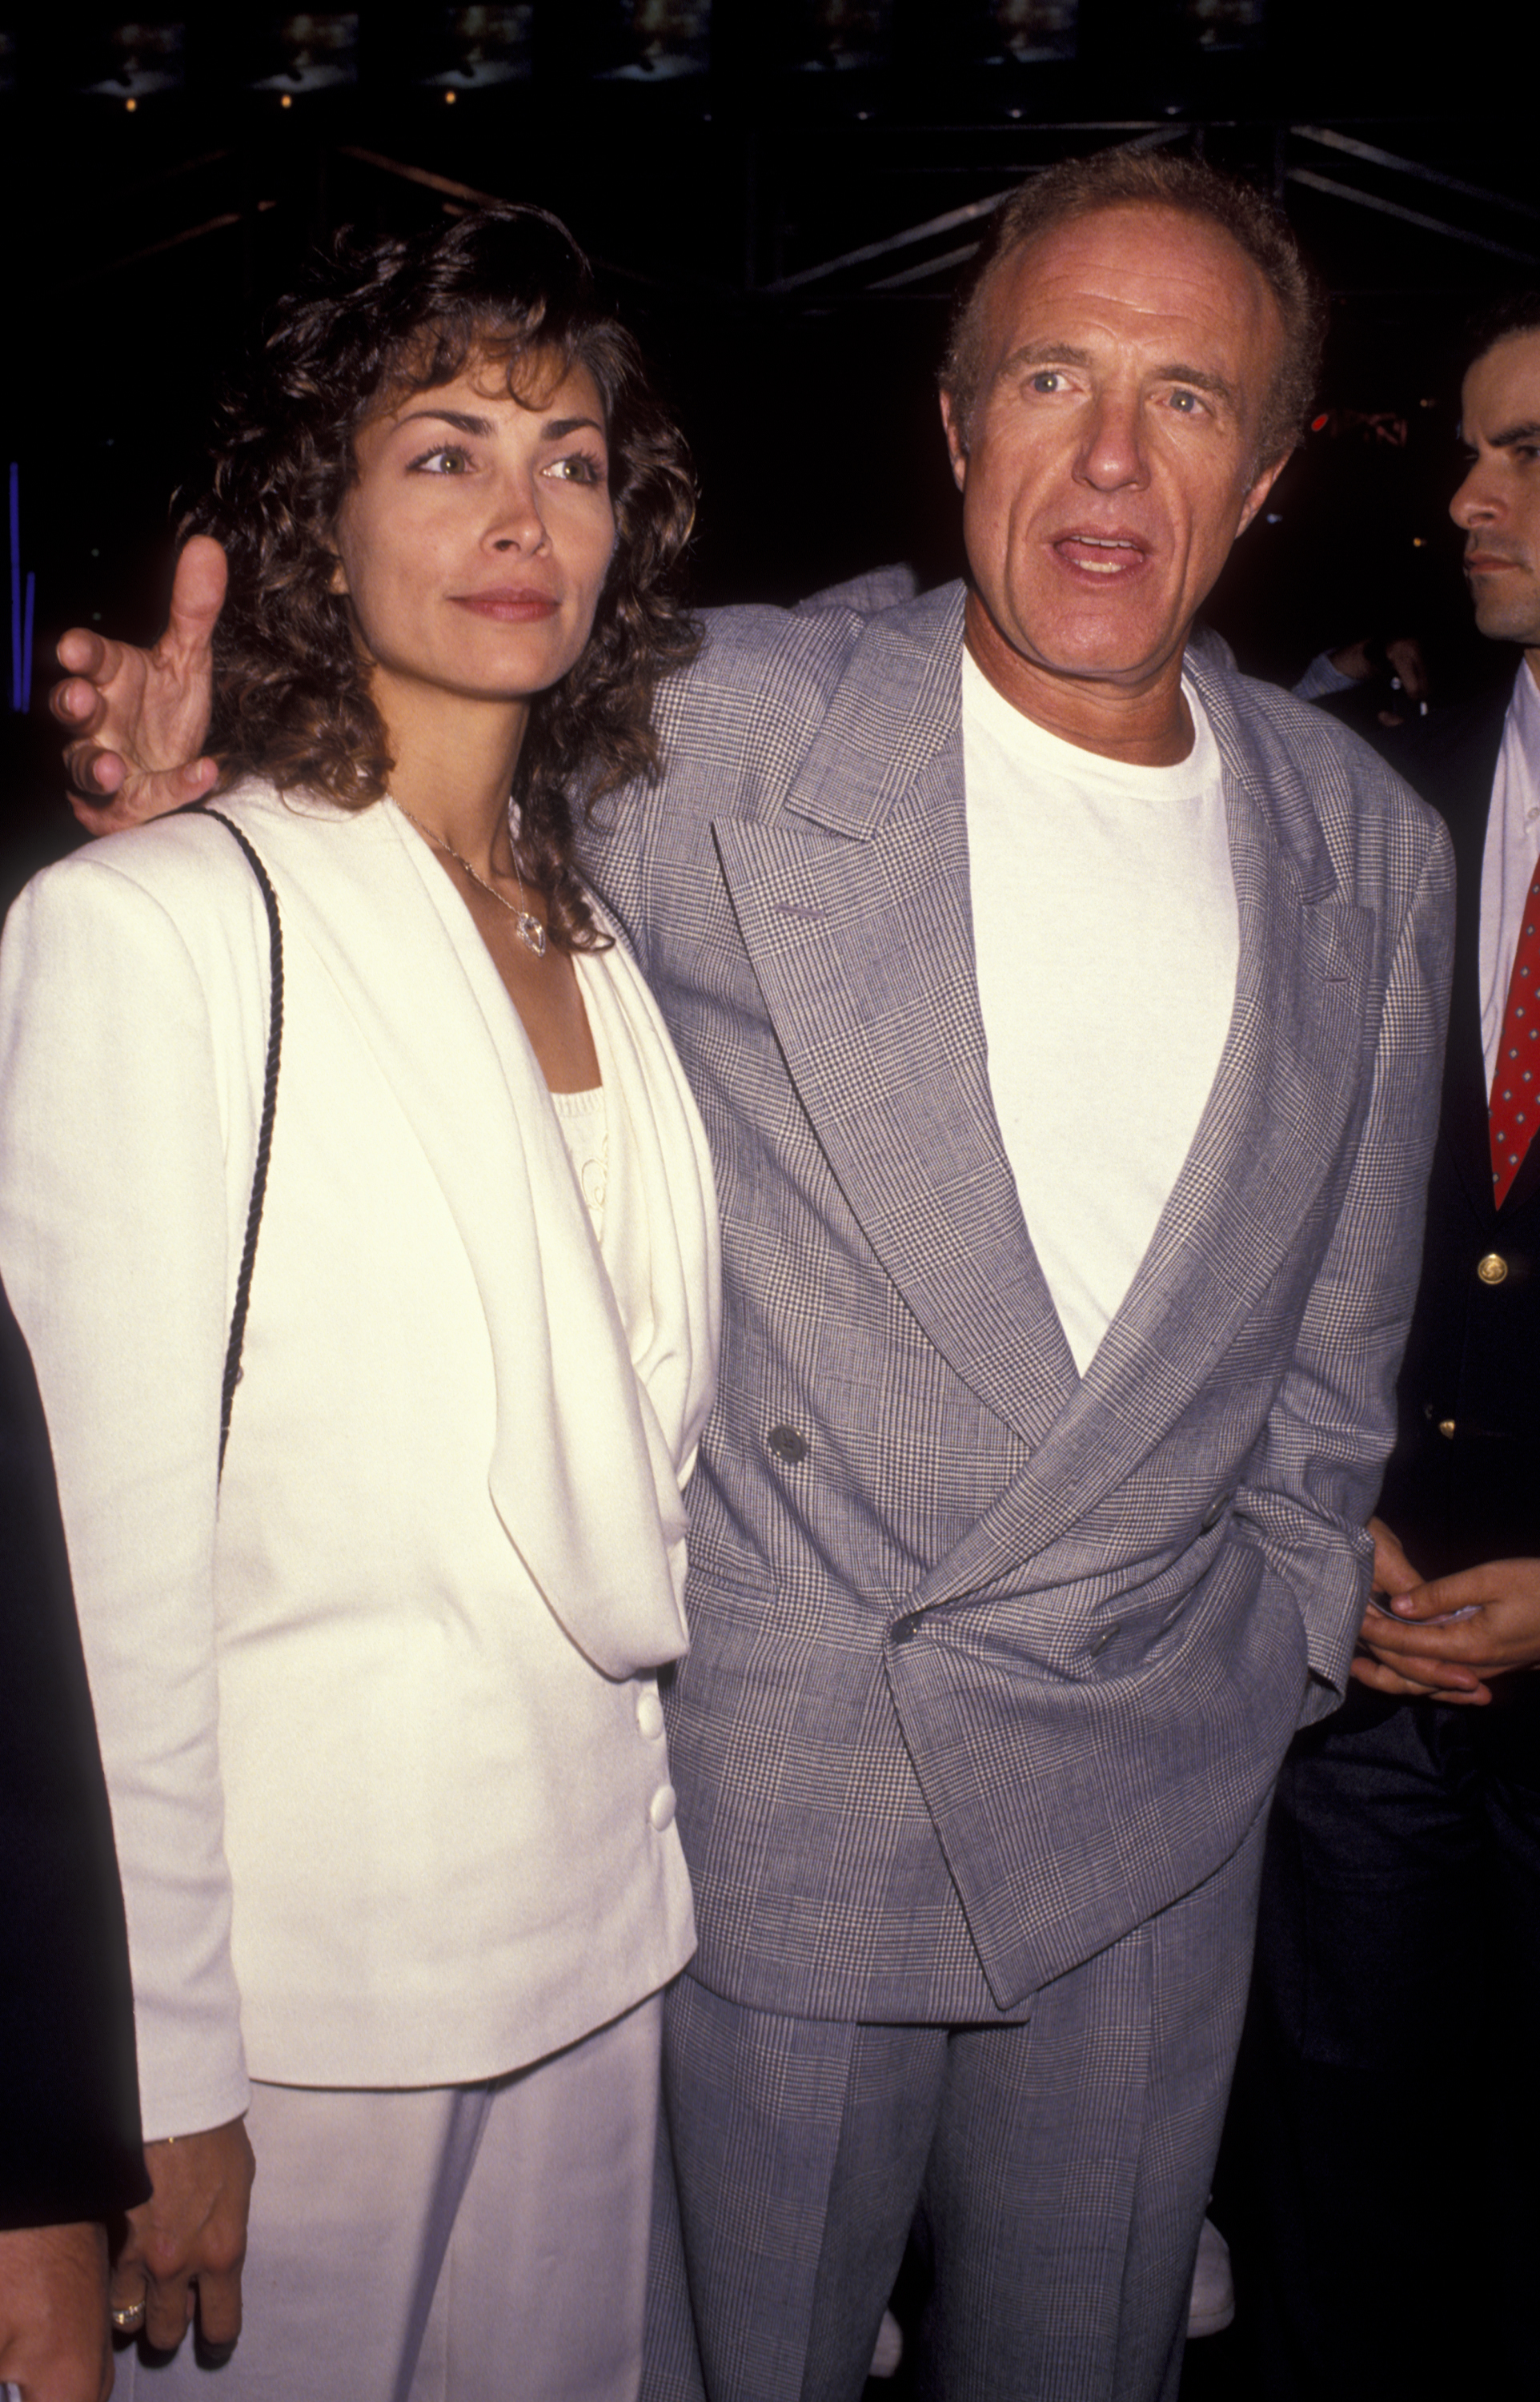 Ingrid Hajek und James Caan bei der Premiere von "Terminator 2 - Judgement Day" am 1. Juni 1991 in Kalifornien | Quelle: Getty Images